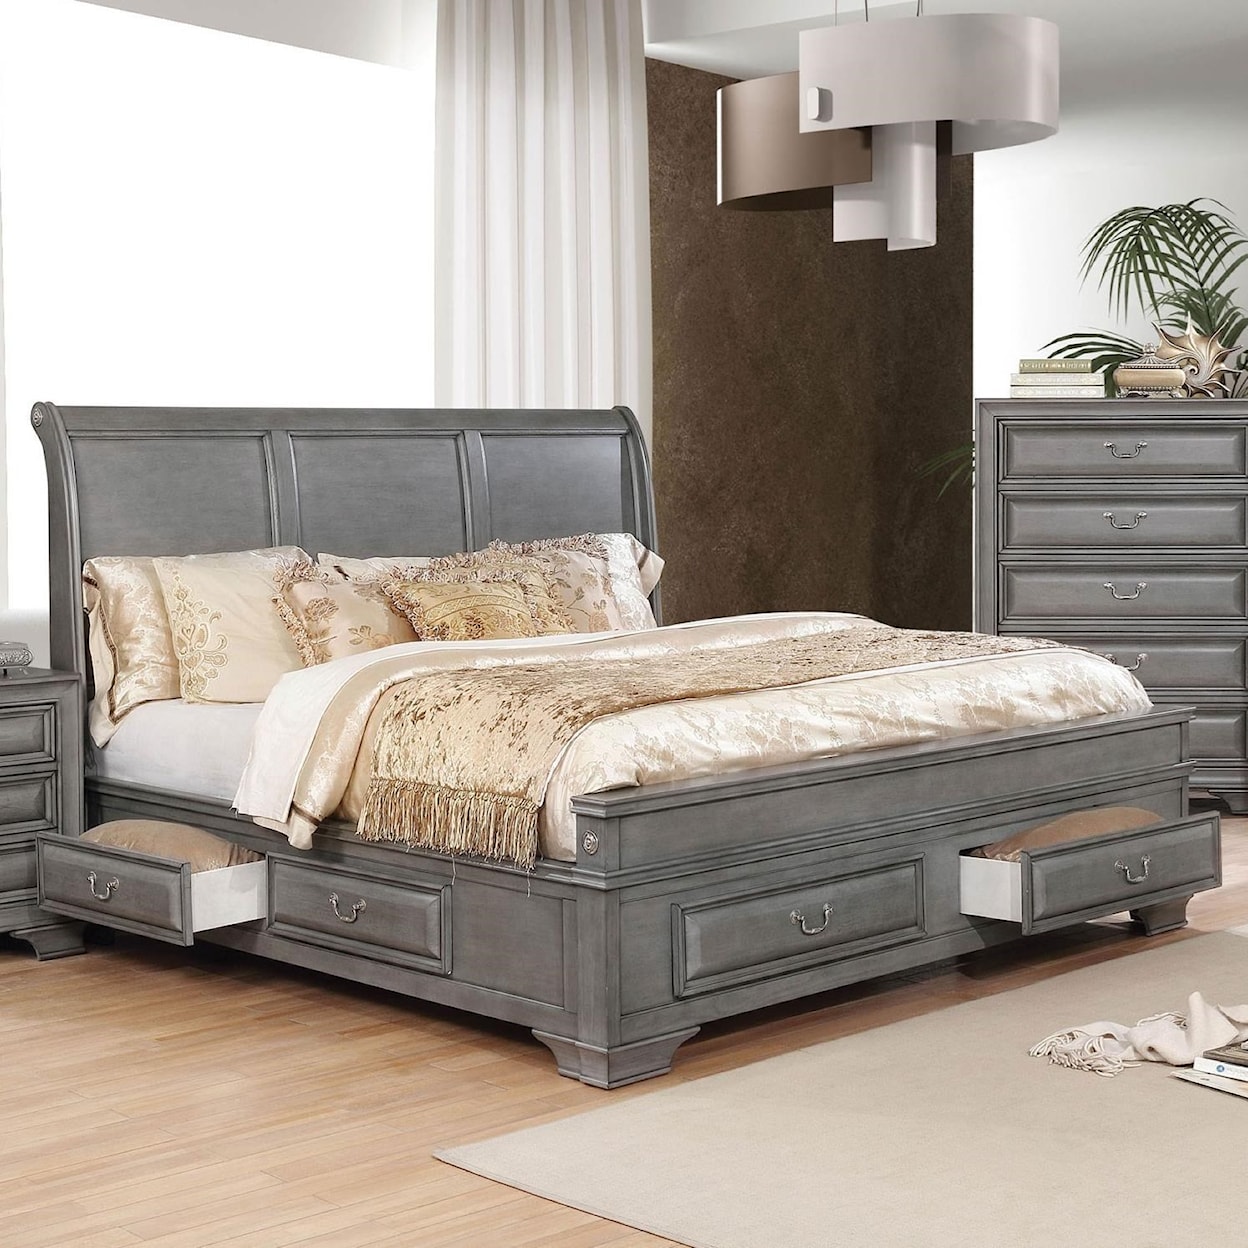 Furniture of America Brandt Queen Bed